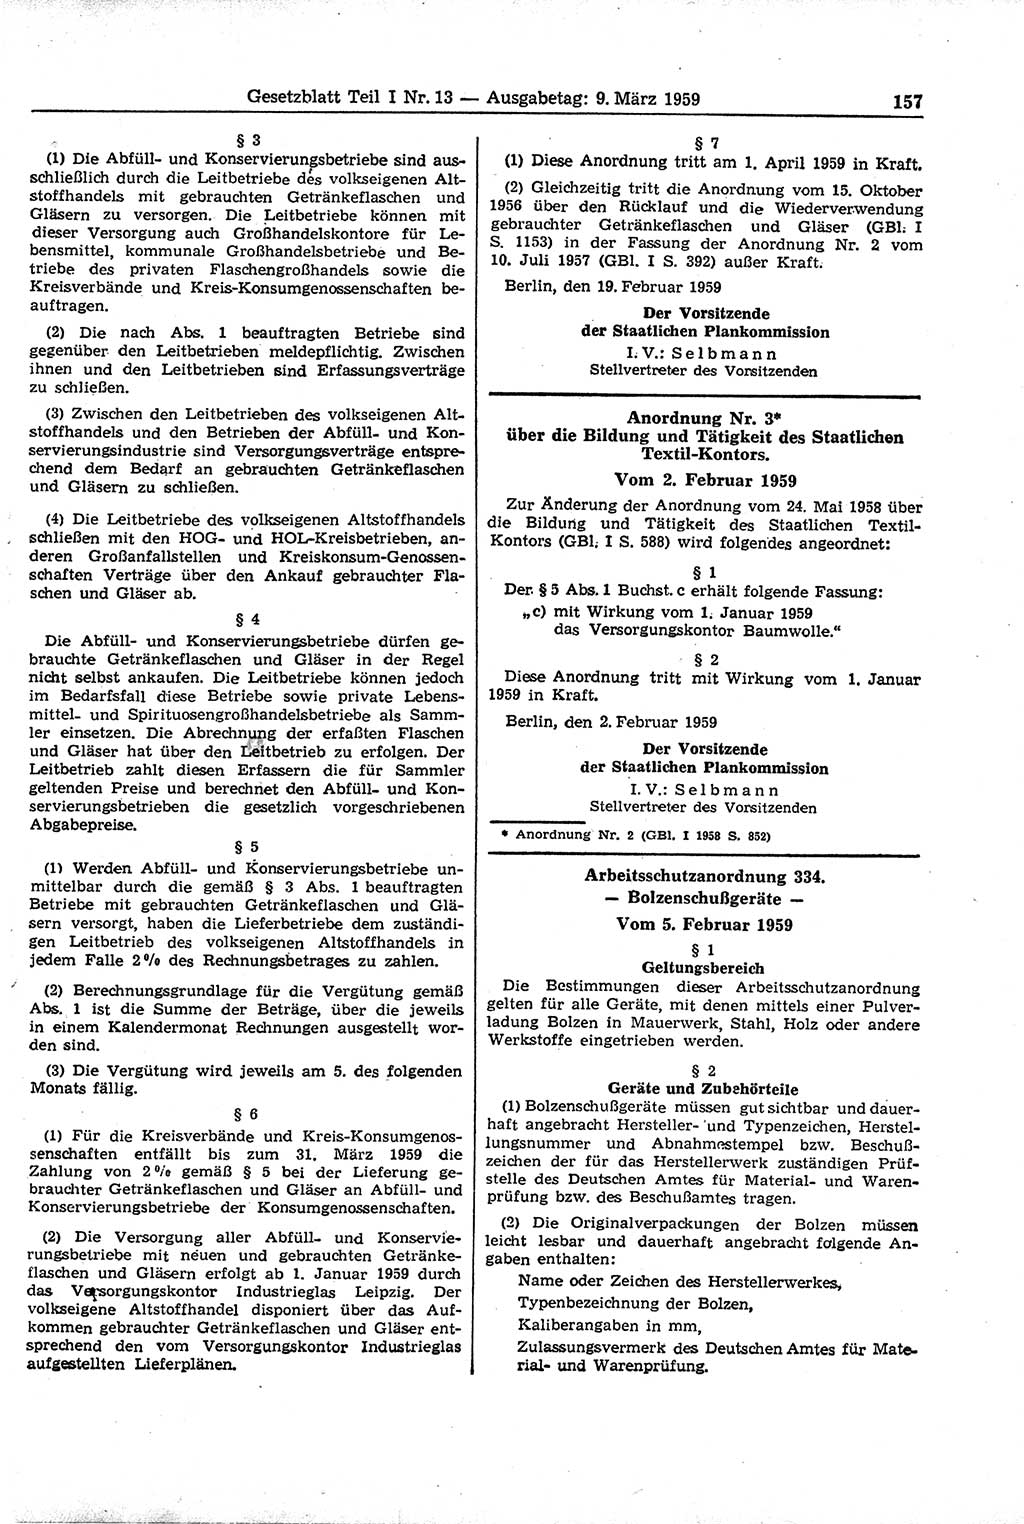 Gesetzblatt (GBl.) der Deutschen Demokratischen Republik (DDR) Teil Ⅰ 1959, Seite 157 (GBl. DDR Ⅰ 1959, S. 157)